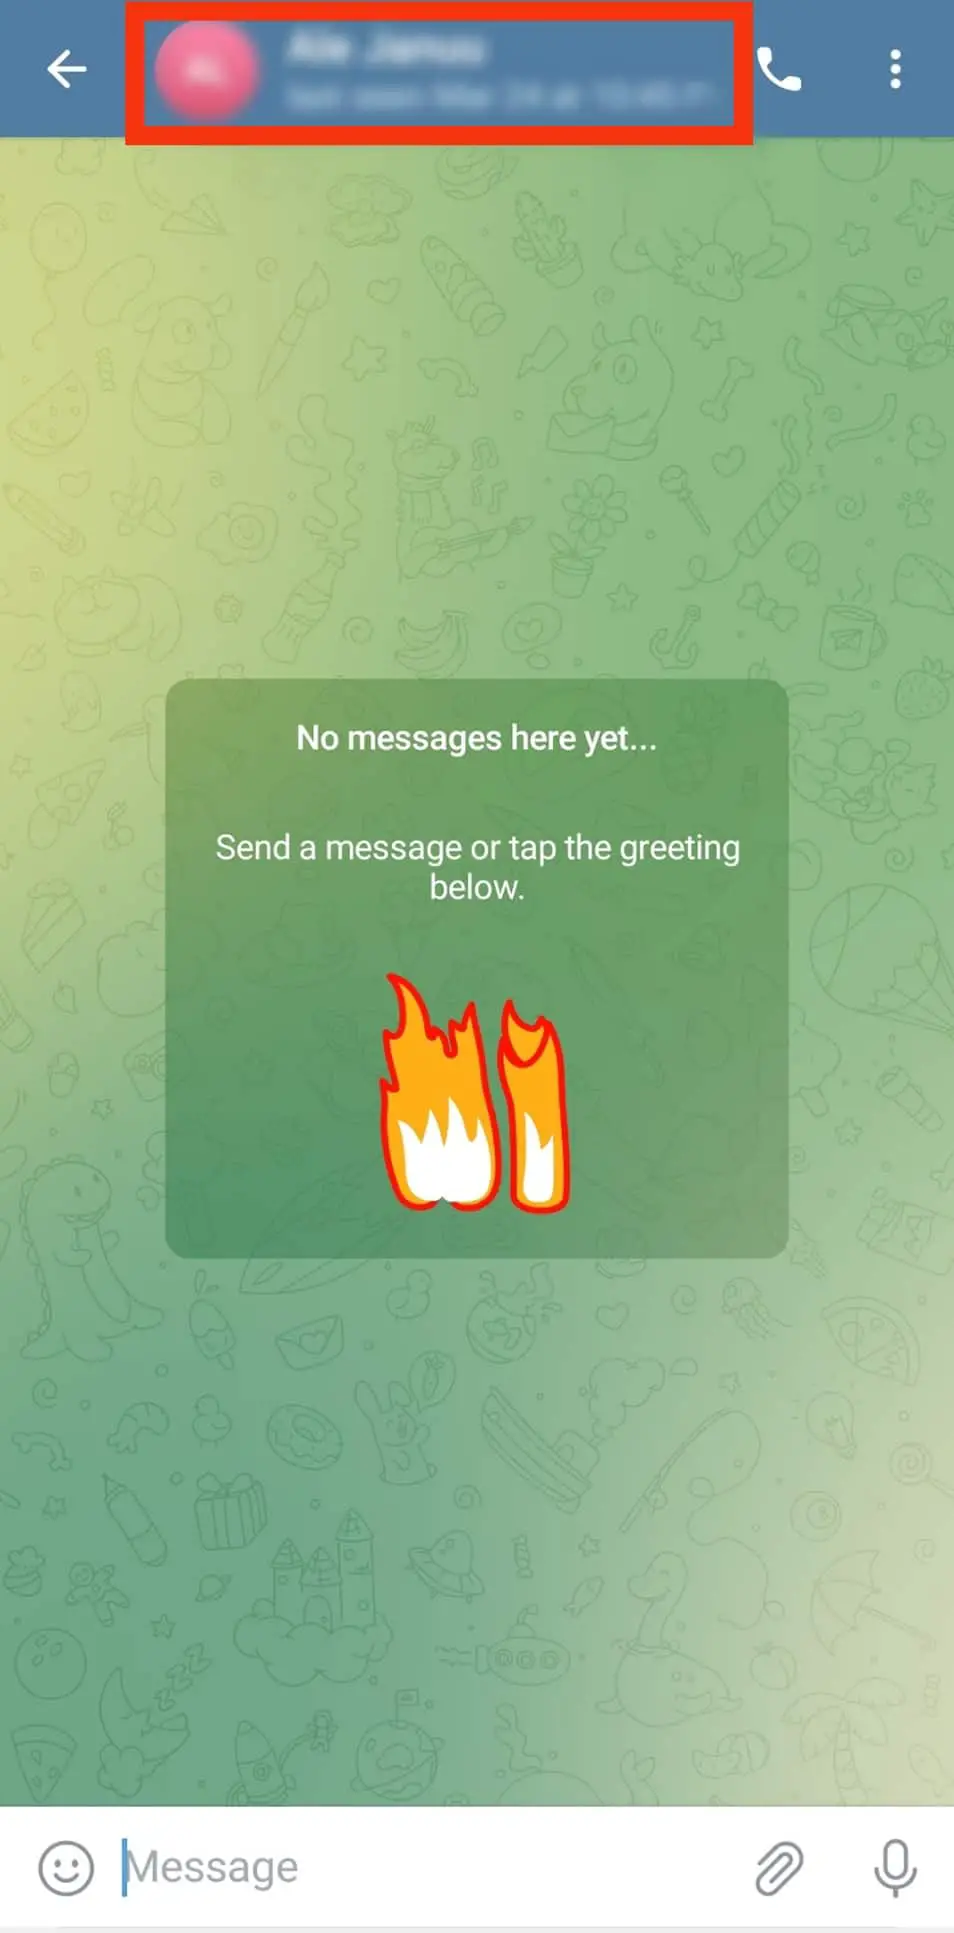 Cómo enviar mensajes en Telegram?